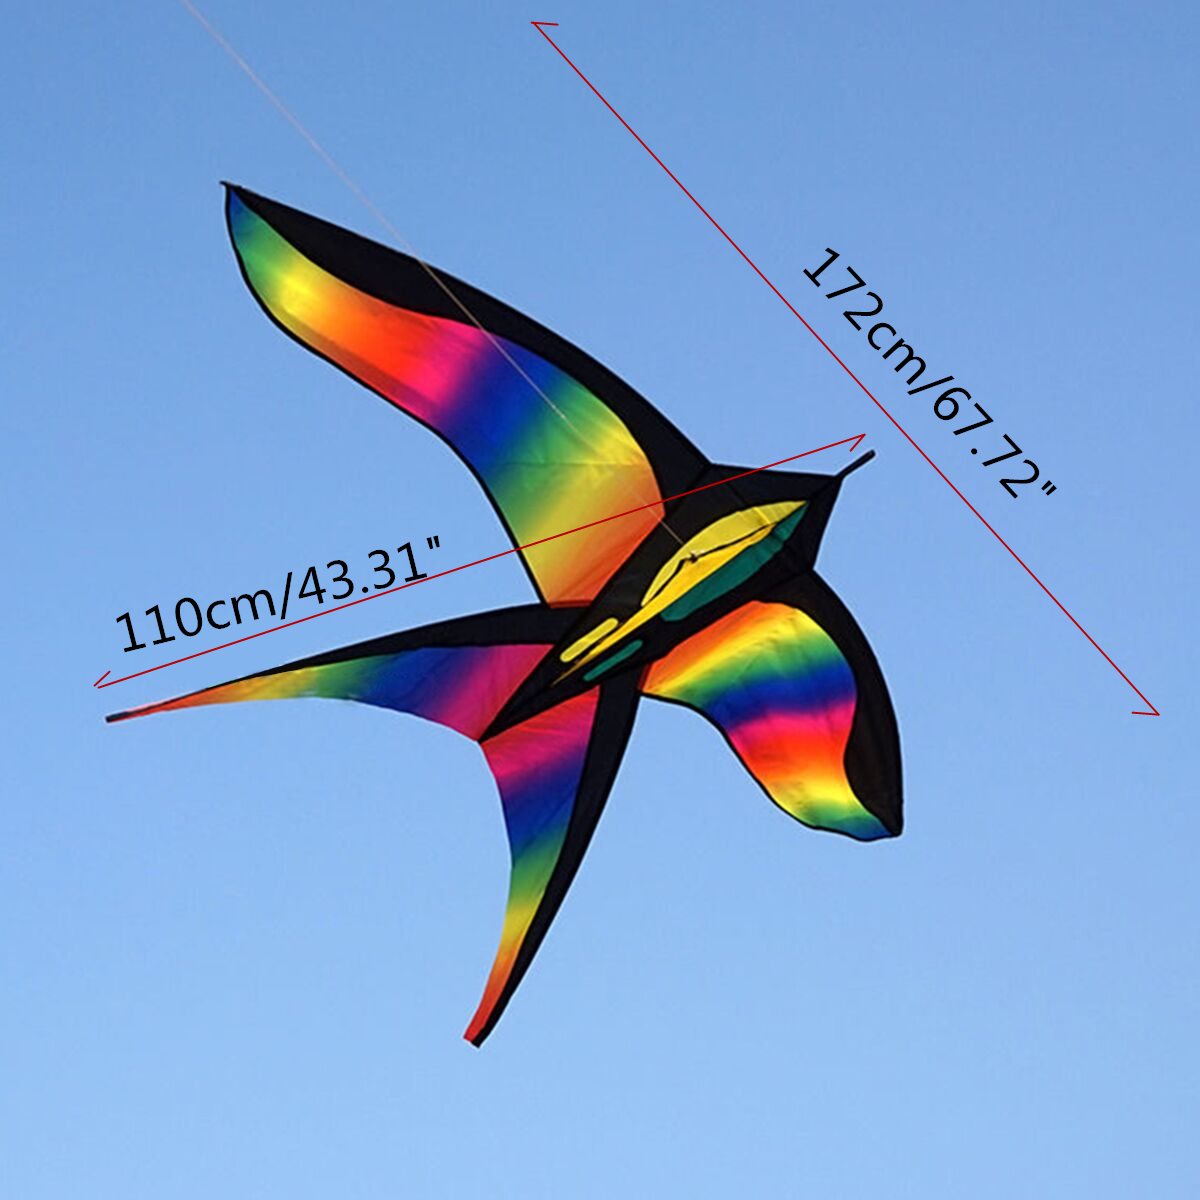 68in-Swallow-Kite-Bird-Kites-Single-Line-Outdoor-Fun-Sports-Toys-Delta-For-Kids-1130511-8